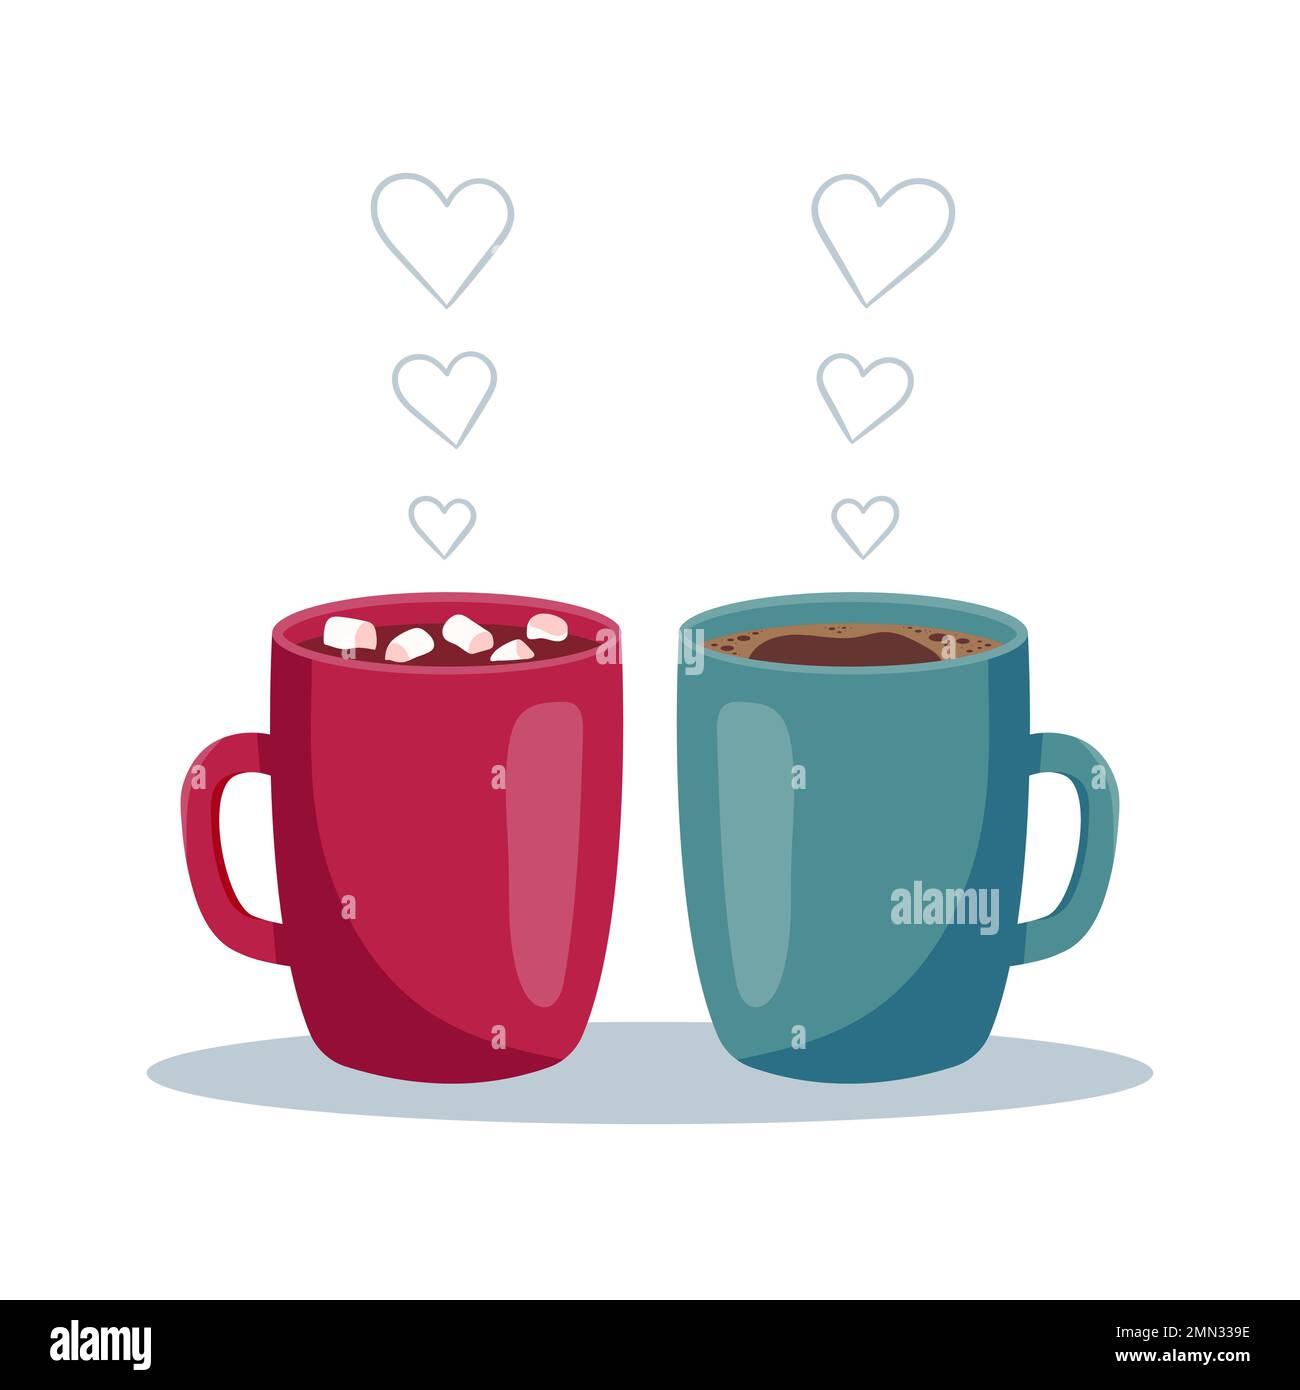 Carine tazze di caffè in amore. Insieme per sempre. Buon San Valentino concetto. Illustrazione vettoriale in stile cartoon piatto. Illustrazione Vettoriale